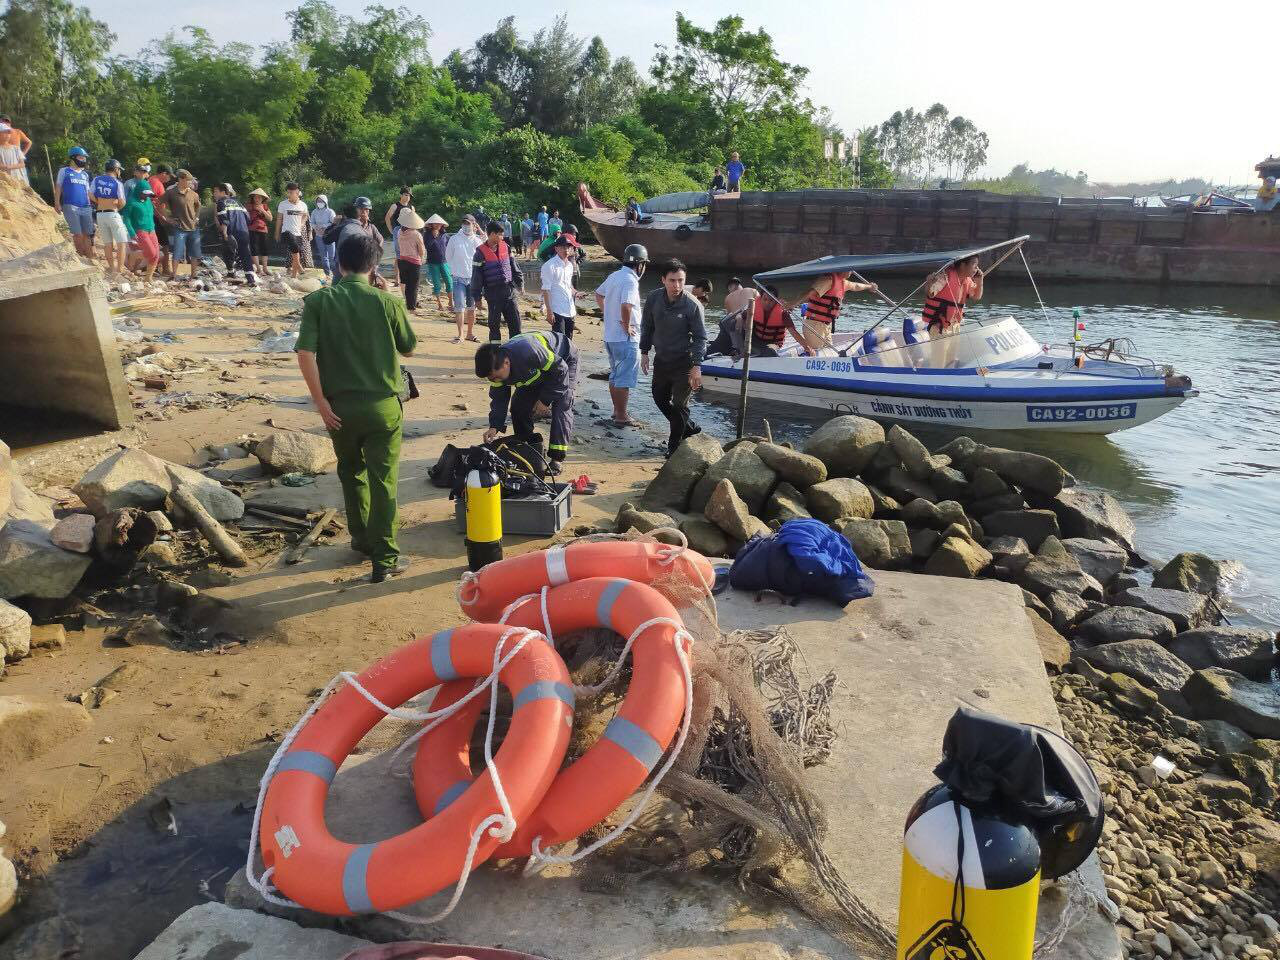 NÓNG: Lật ghe trên sông Thu Bồn, 5 người mất tích - Ảnh 1.